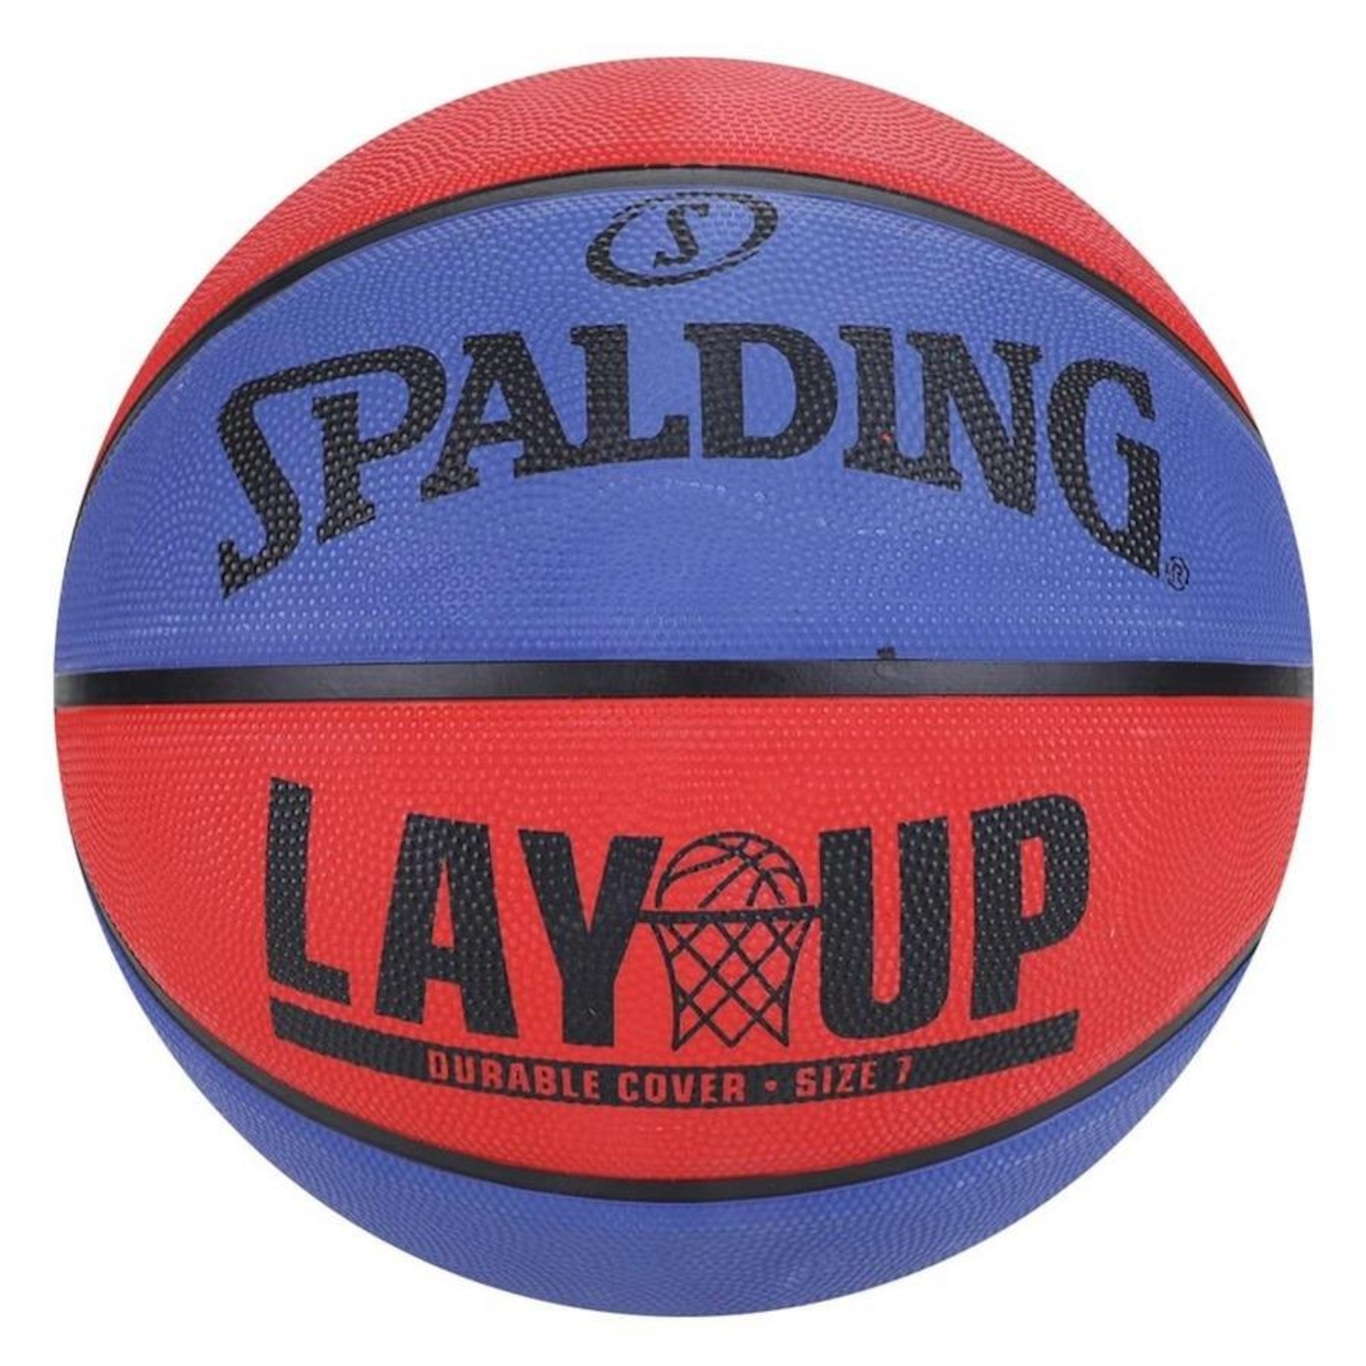 Bola de Basquete Spalding Lay Up Tam 7 Azul e Vermelha 